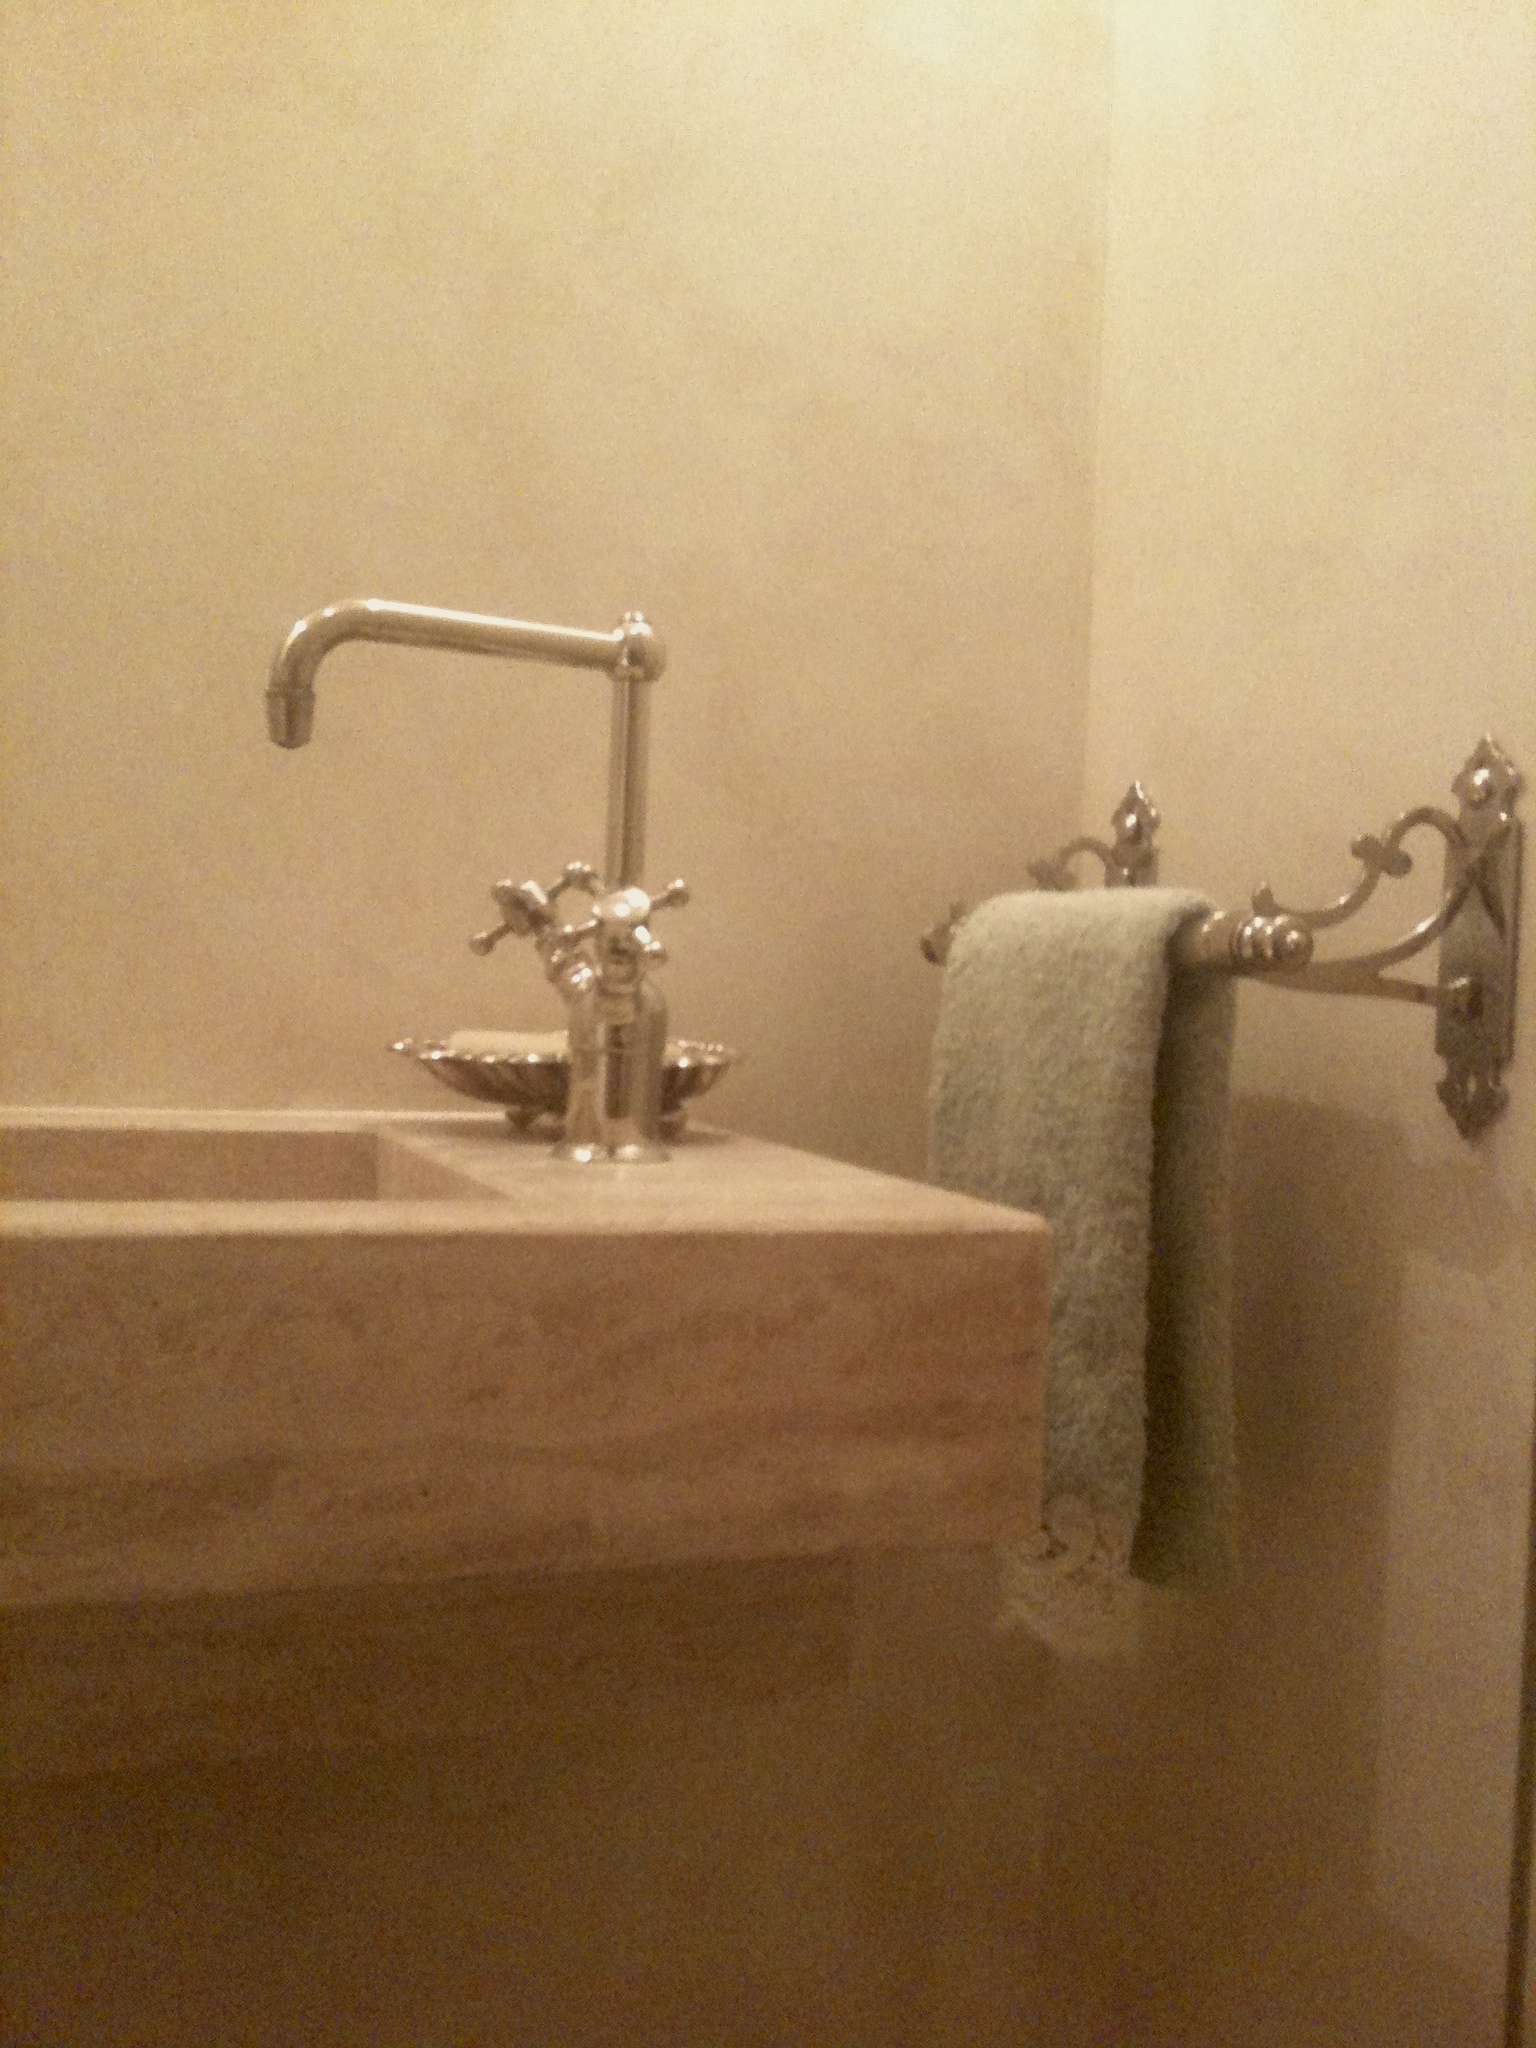 Conception de salle de bain - marbre travertin et peinture decorative imitation marbre